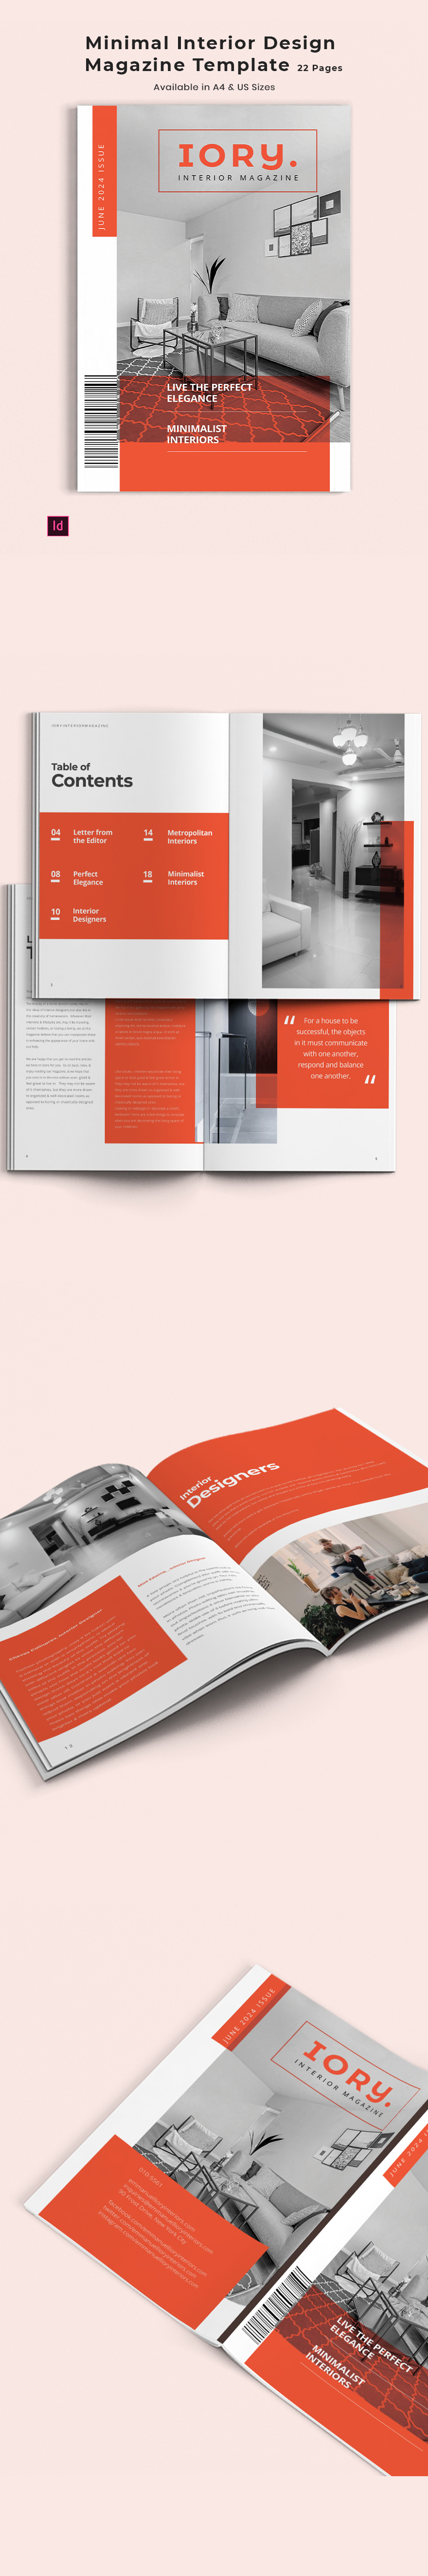 Minimal Interior Design Magazine Template